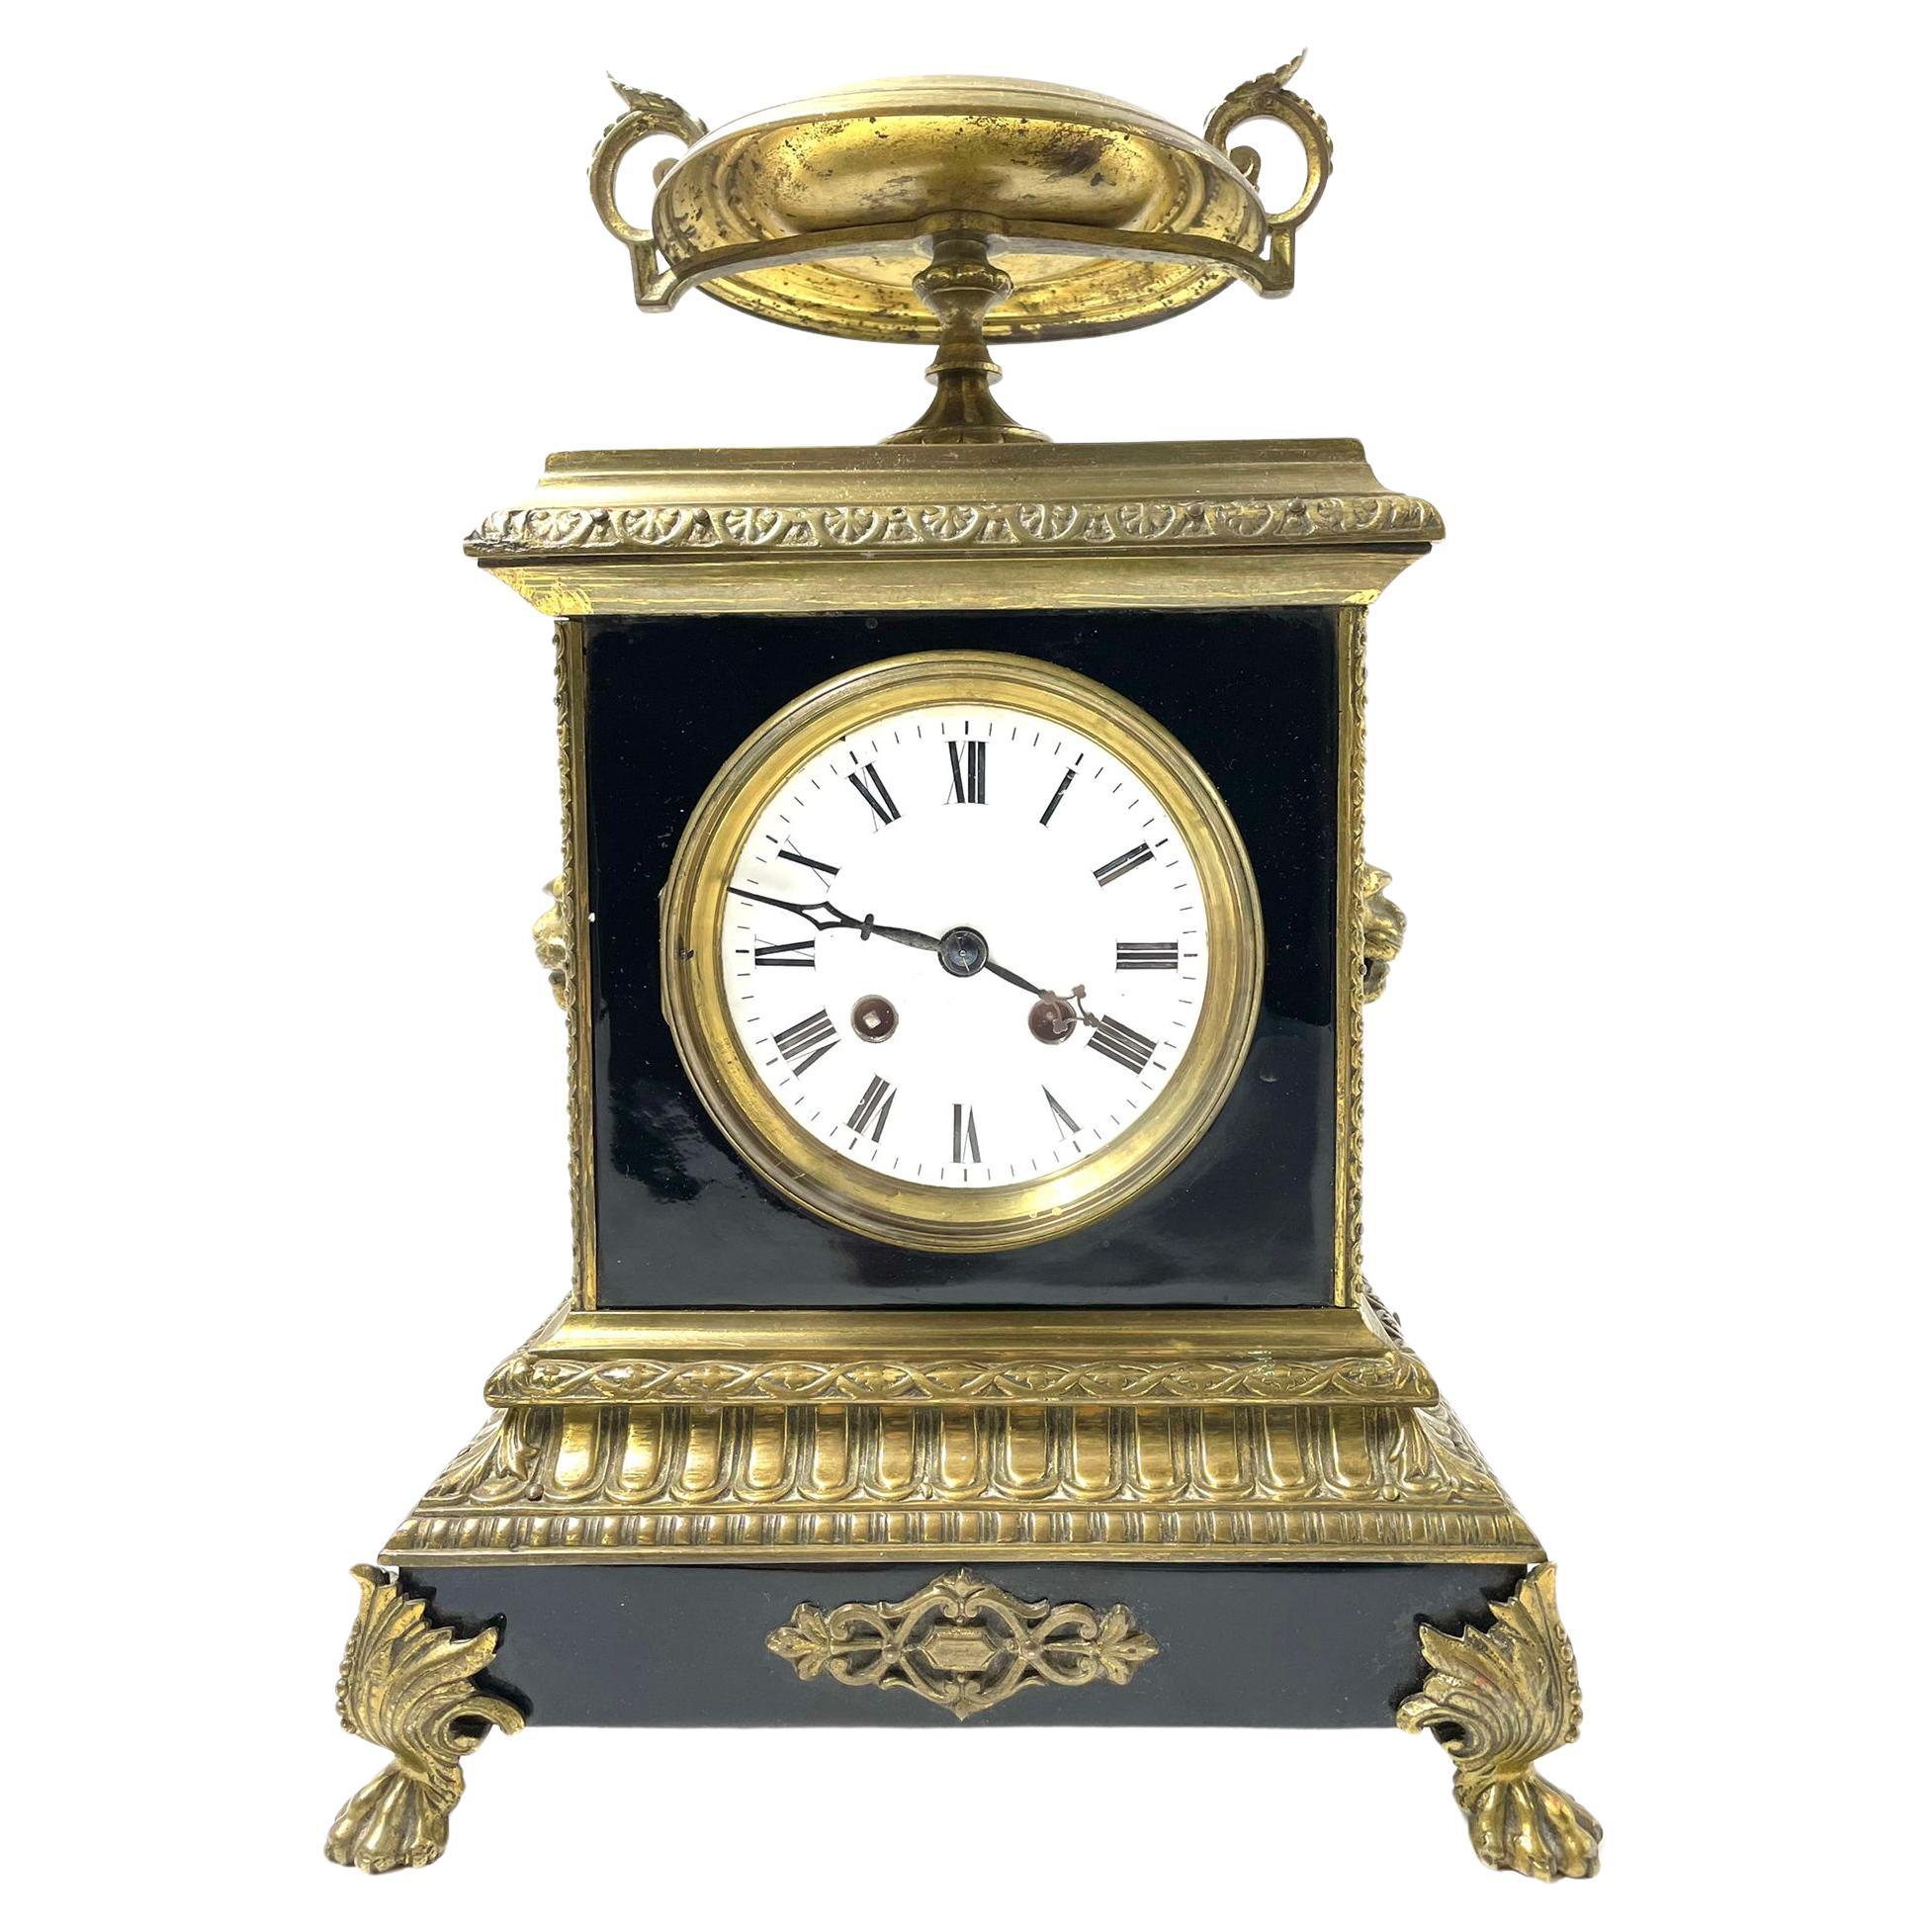 Napoleon-Uhr aus Emaille und Bronze aus dem 19. Jahrhundert